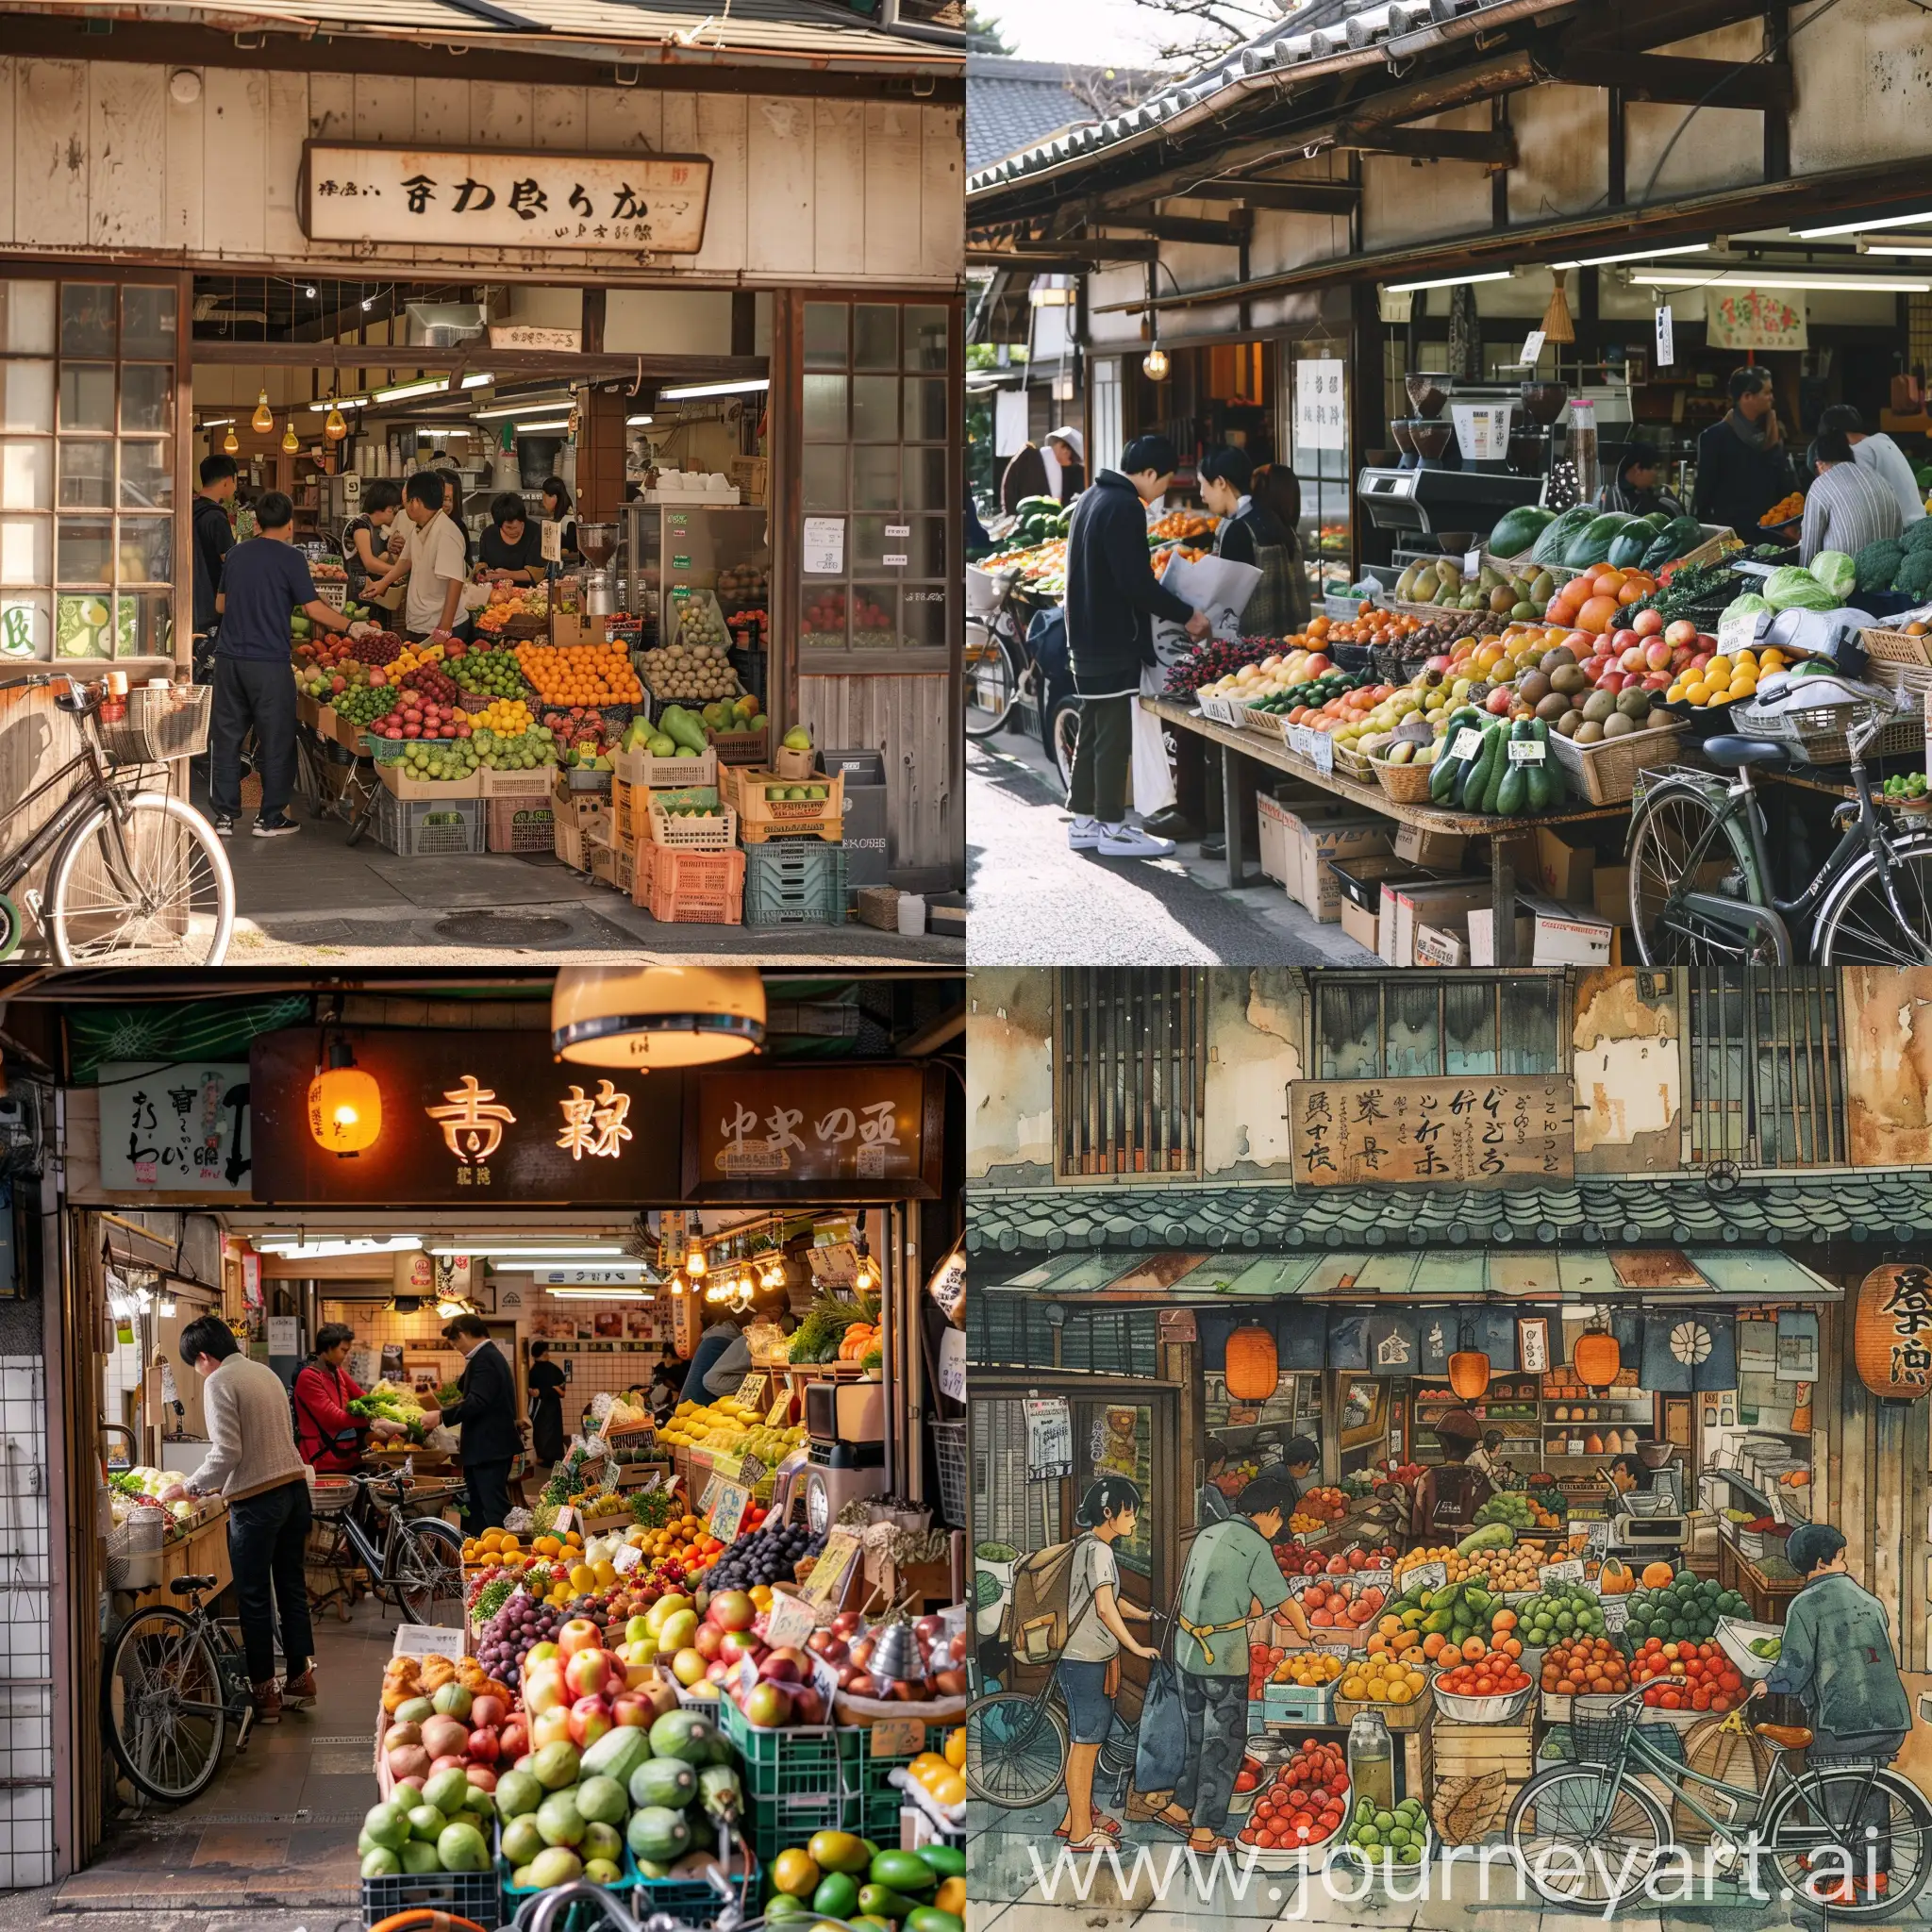 菜市场中有很多人在卖水果和蔬菜，其中有一个日式咖啡店，店里有个人正在坐手冲，门口停着一辆自行车